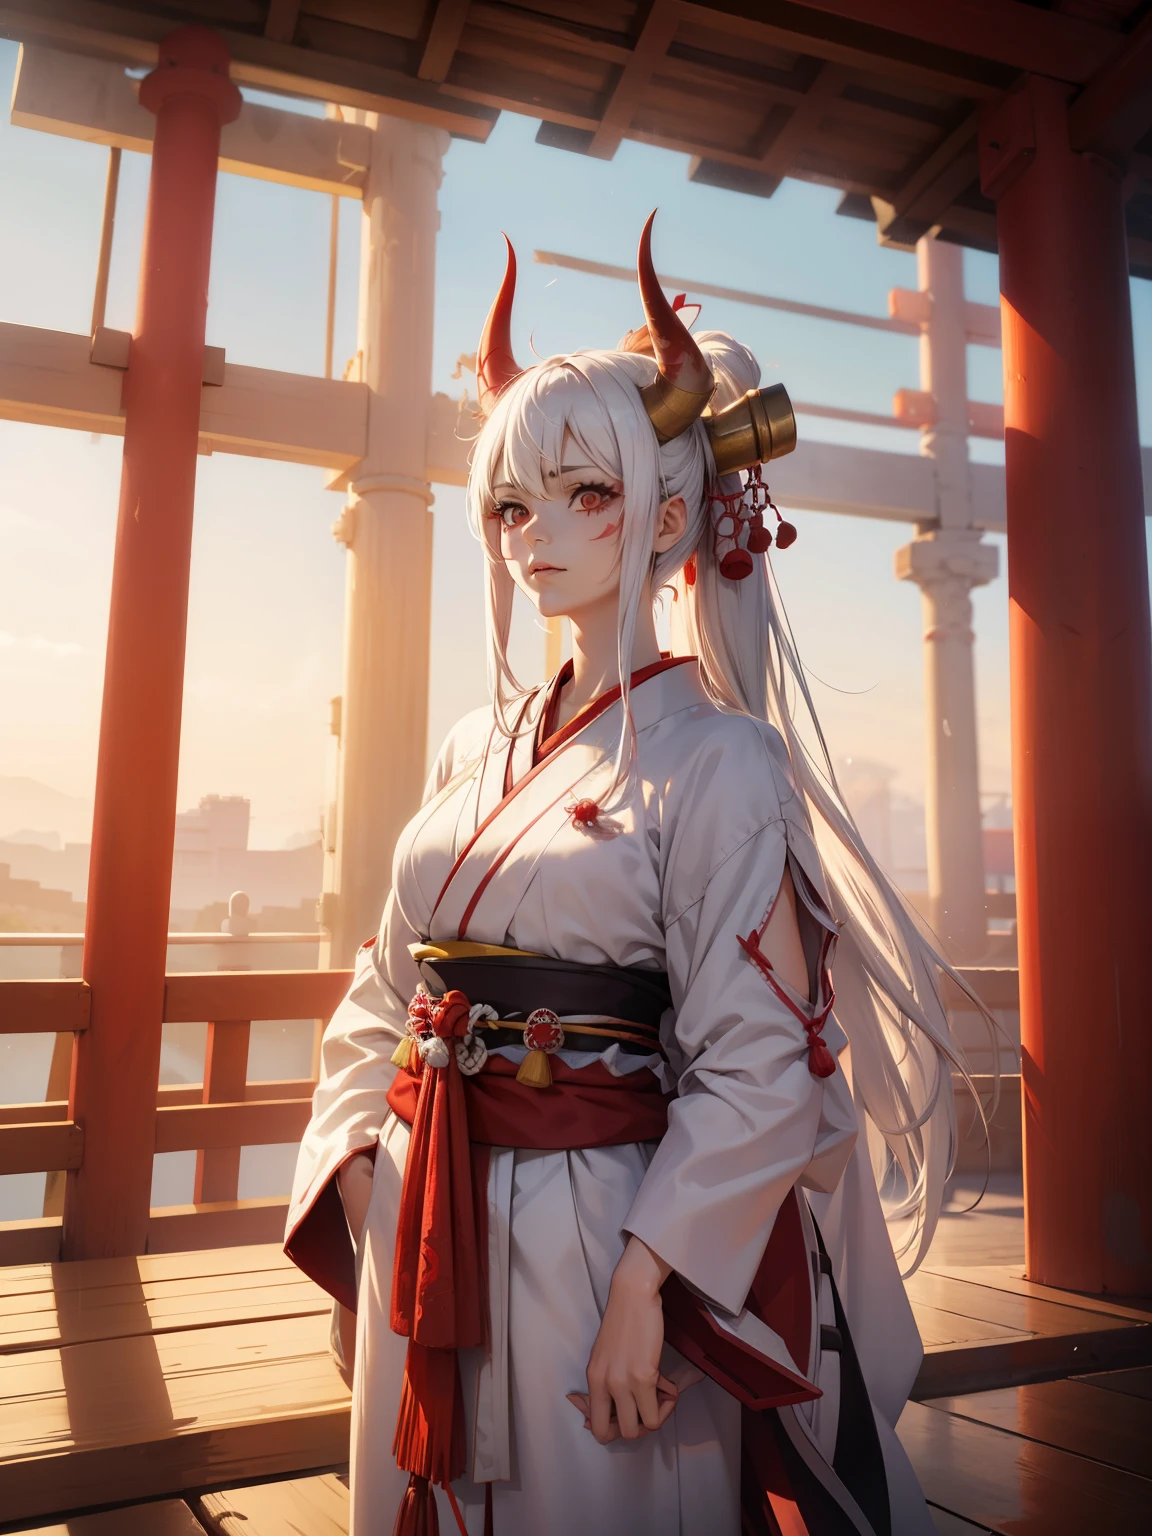 Mujer con cuernos rojos en la cabeza., en traje japonés, De pie en el borde del techo, con pelo blanco, (detalles intrincados:0.9), (hdr, Hiperdetalle:1.2), (texturas naturales de la piel, hiperrealista, luz tenue, afilado)